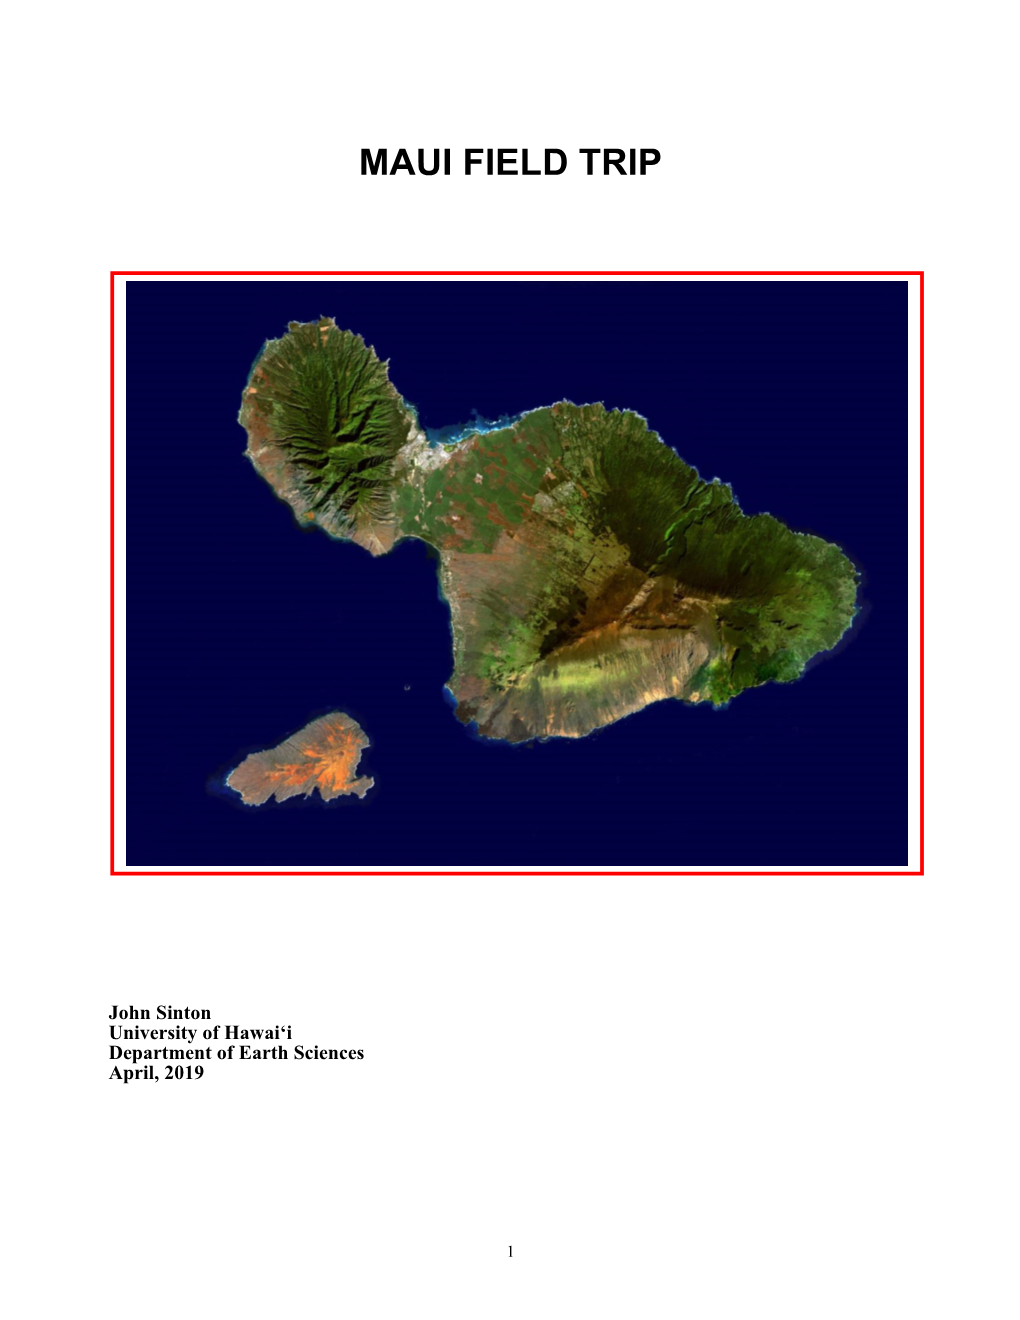 Maui Field Trip